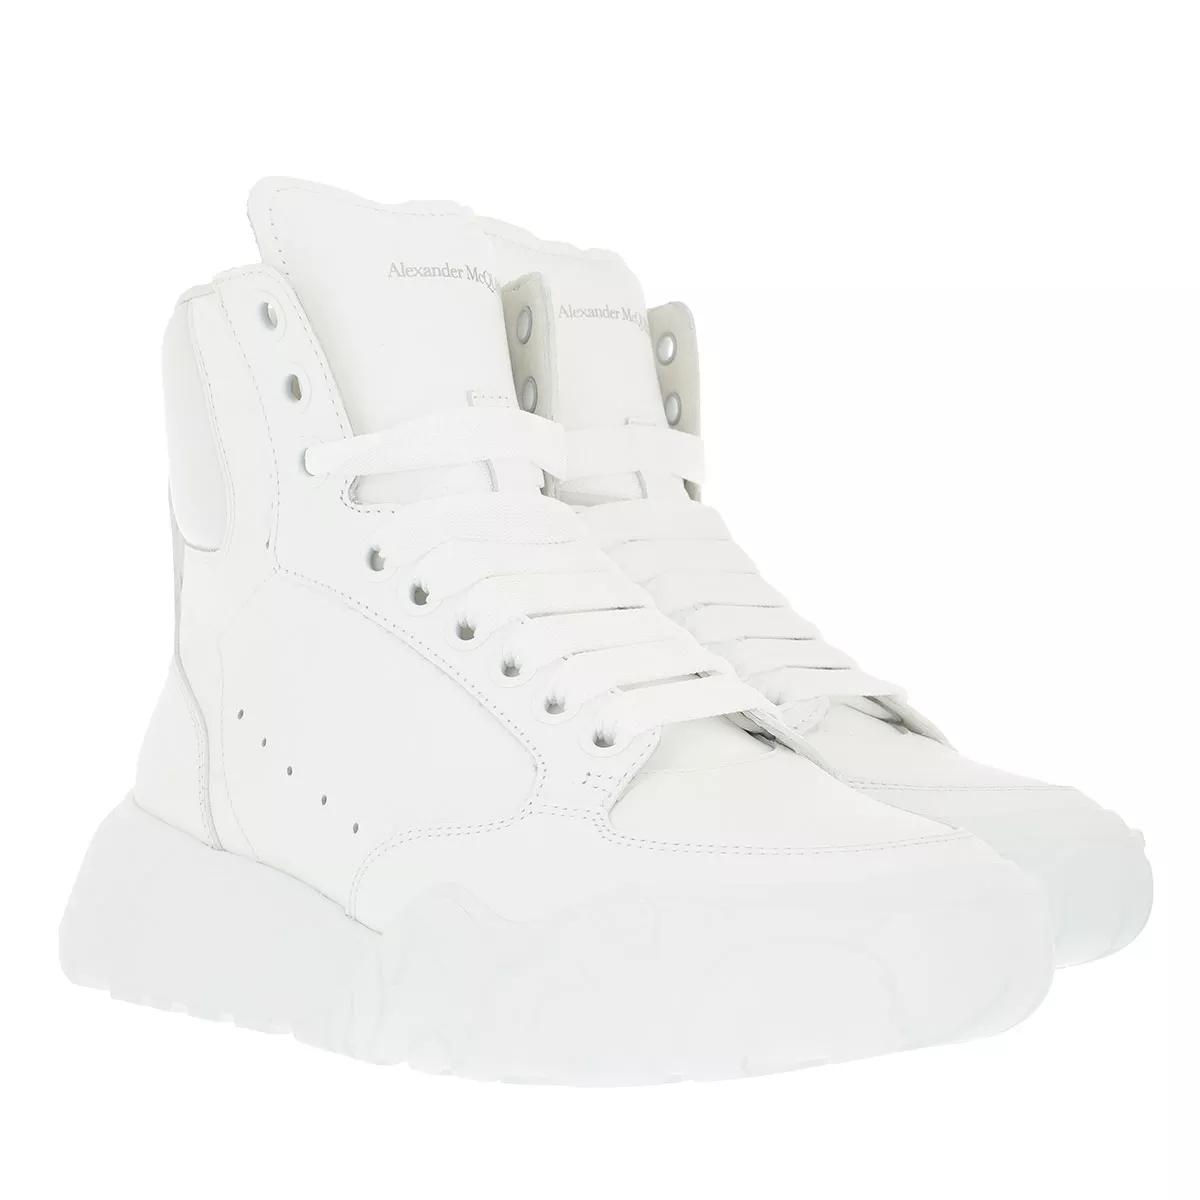 Alexander McQueen Sneakers - High Top Sneakers - Gr. 41 (EU) - in Weiß - für Damen von alexander mcqueen